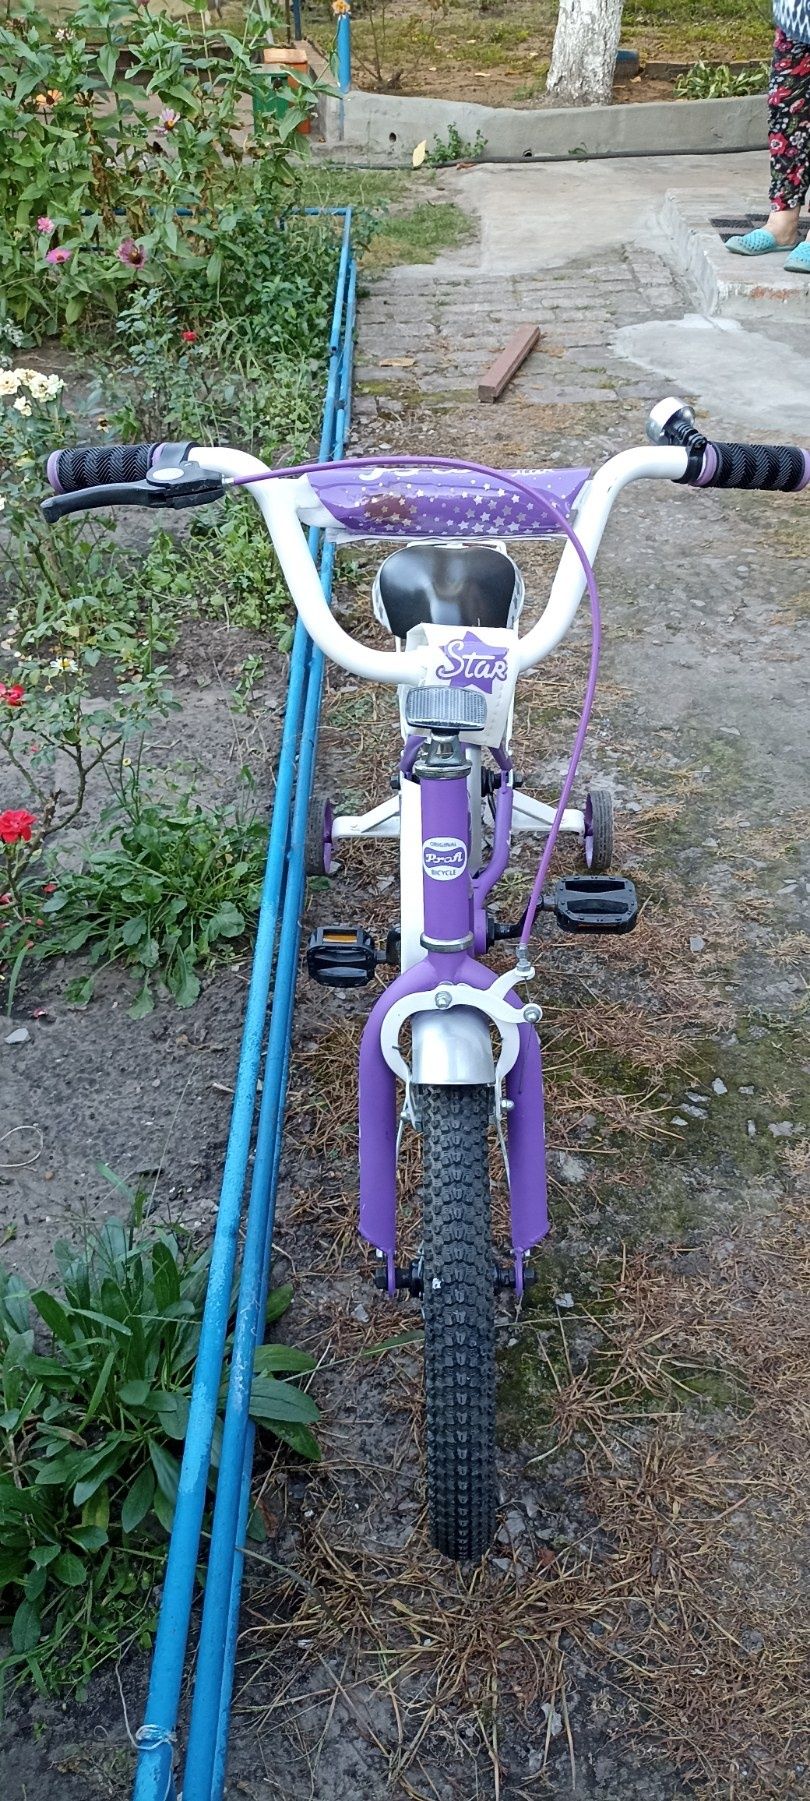 Продам детский велосипед в отличном состоянии